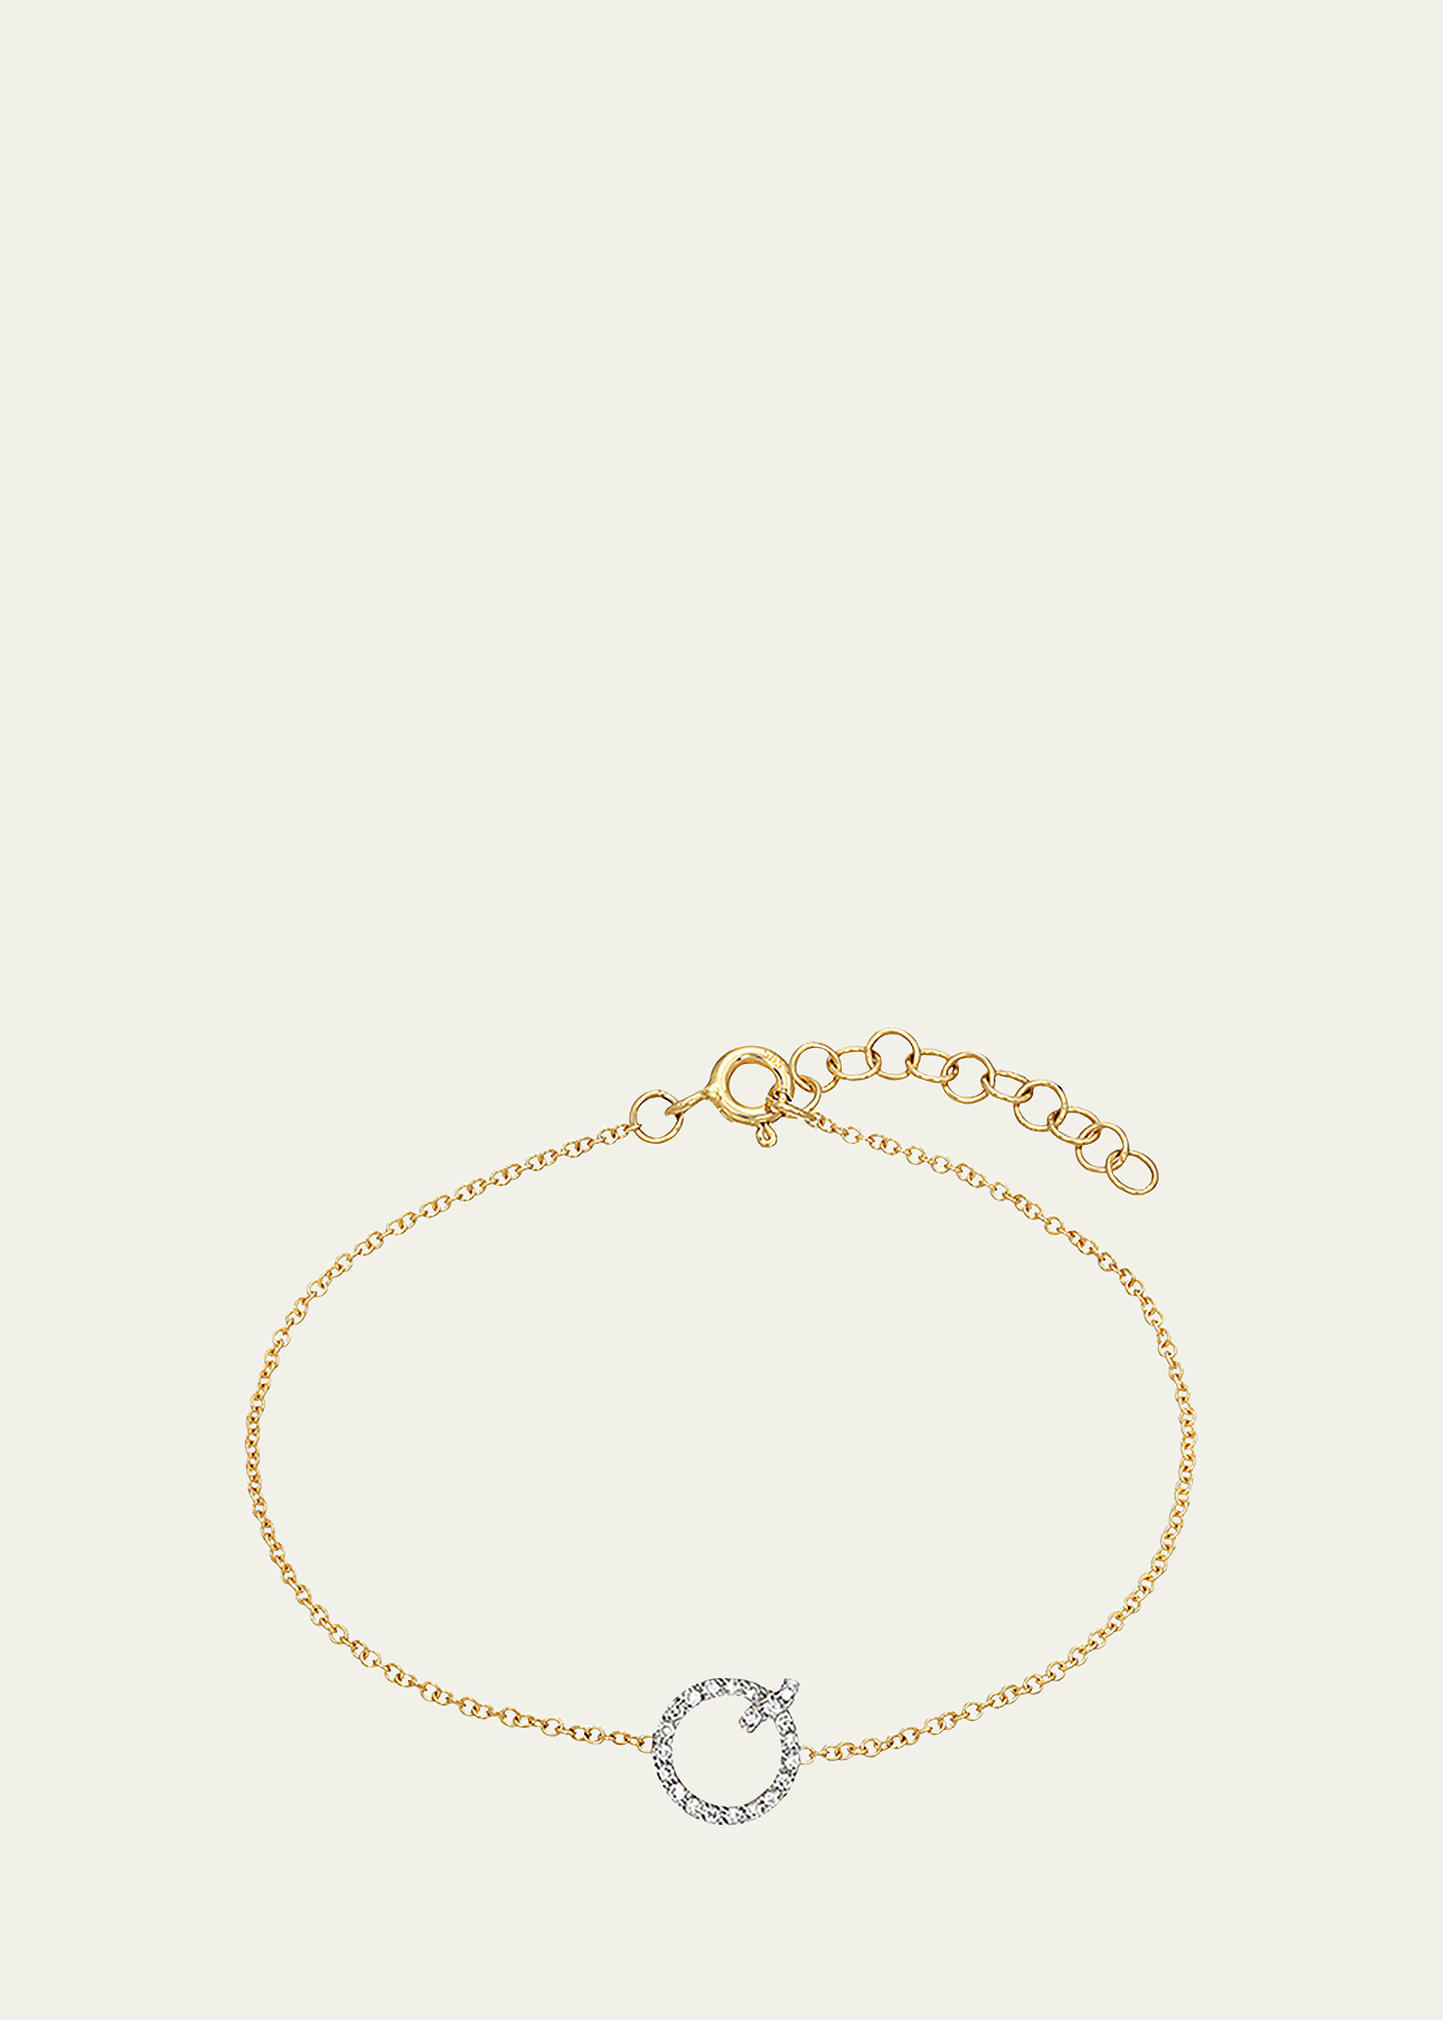 Zoe Lev Jewelry 14k Yellow Gold Diamond Initial X Bracelet